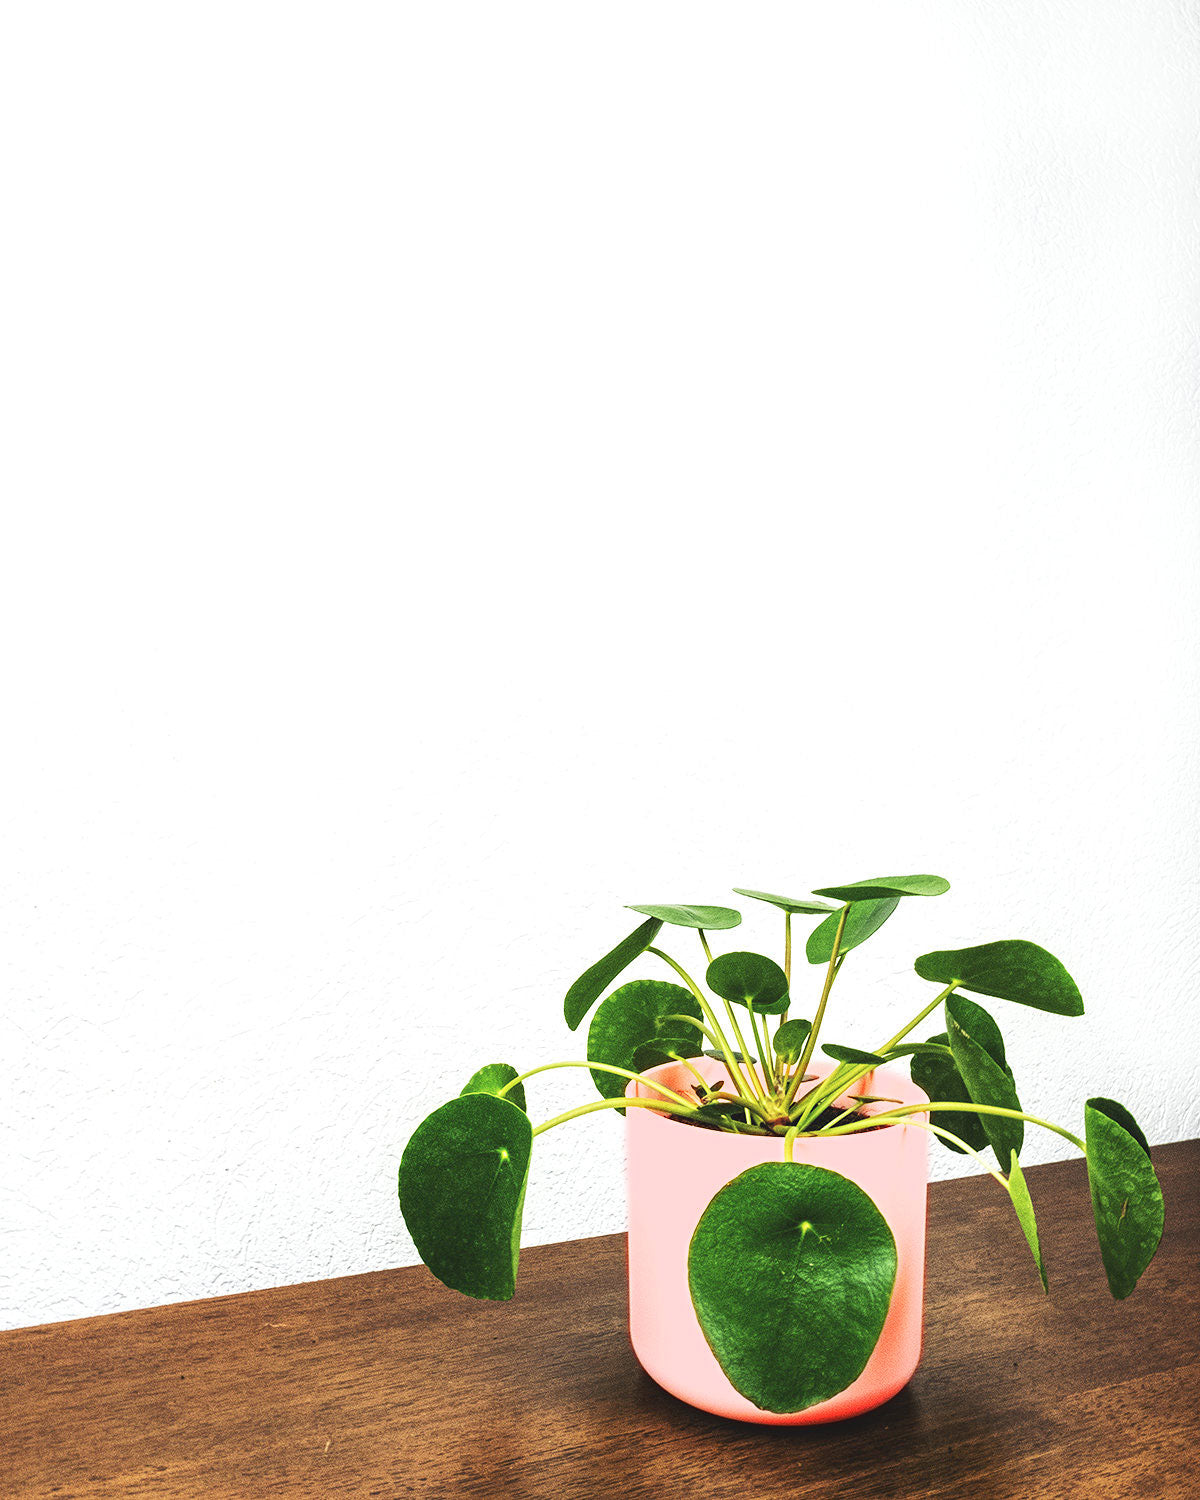 Ufopflanze in pinkem Topf auf braunem Holztisch